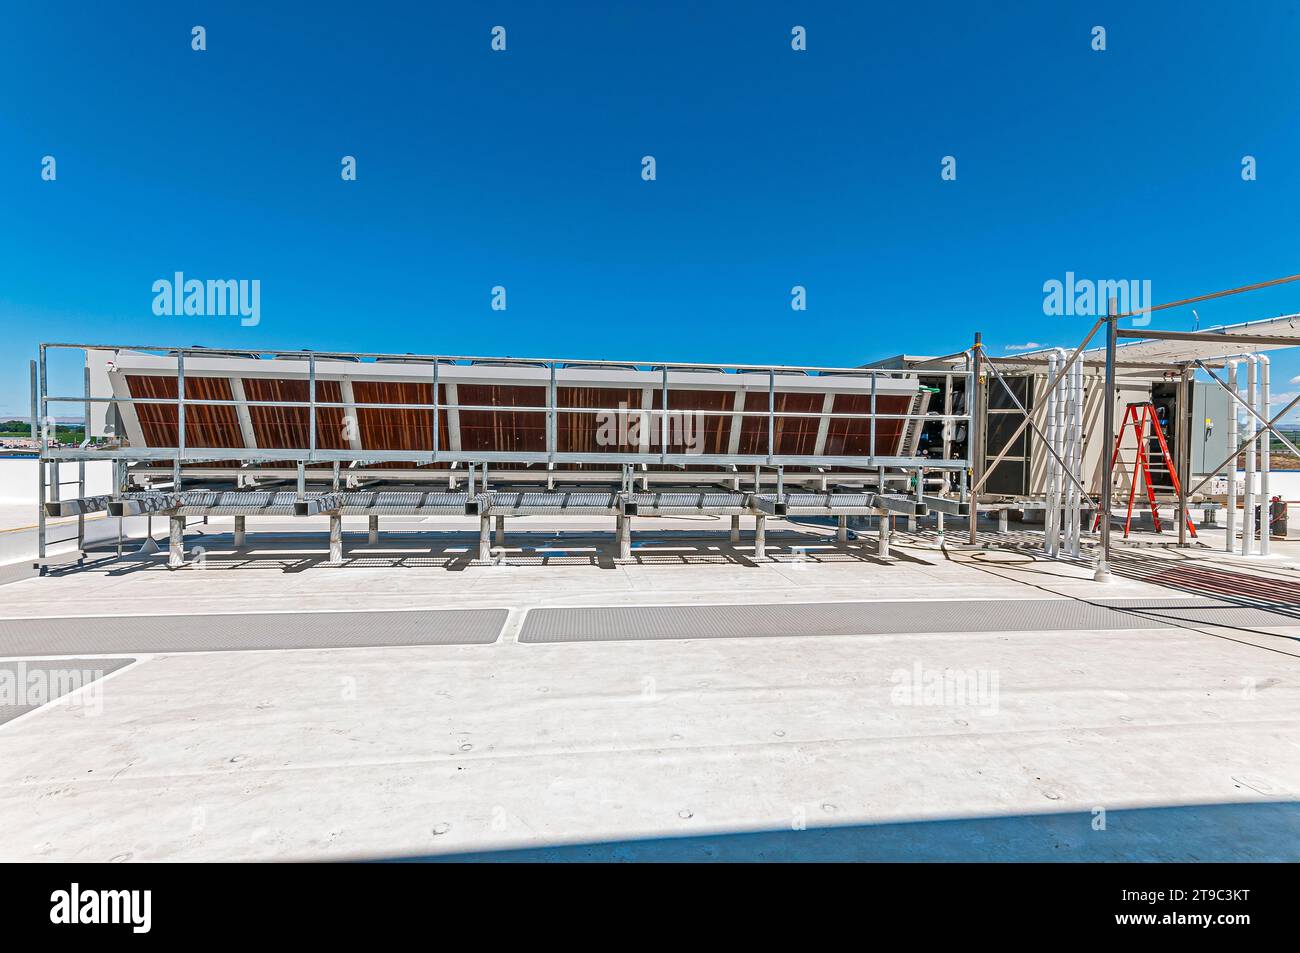 Un condensatore adiabatico sul tetto di un magazzino di stoccaggio a freddo di CO2 (refrigerazione industriale) Foto Stock